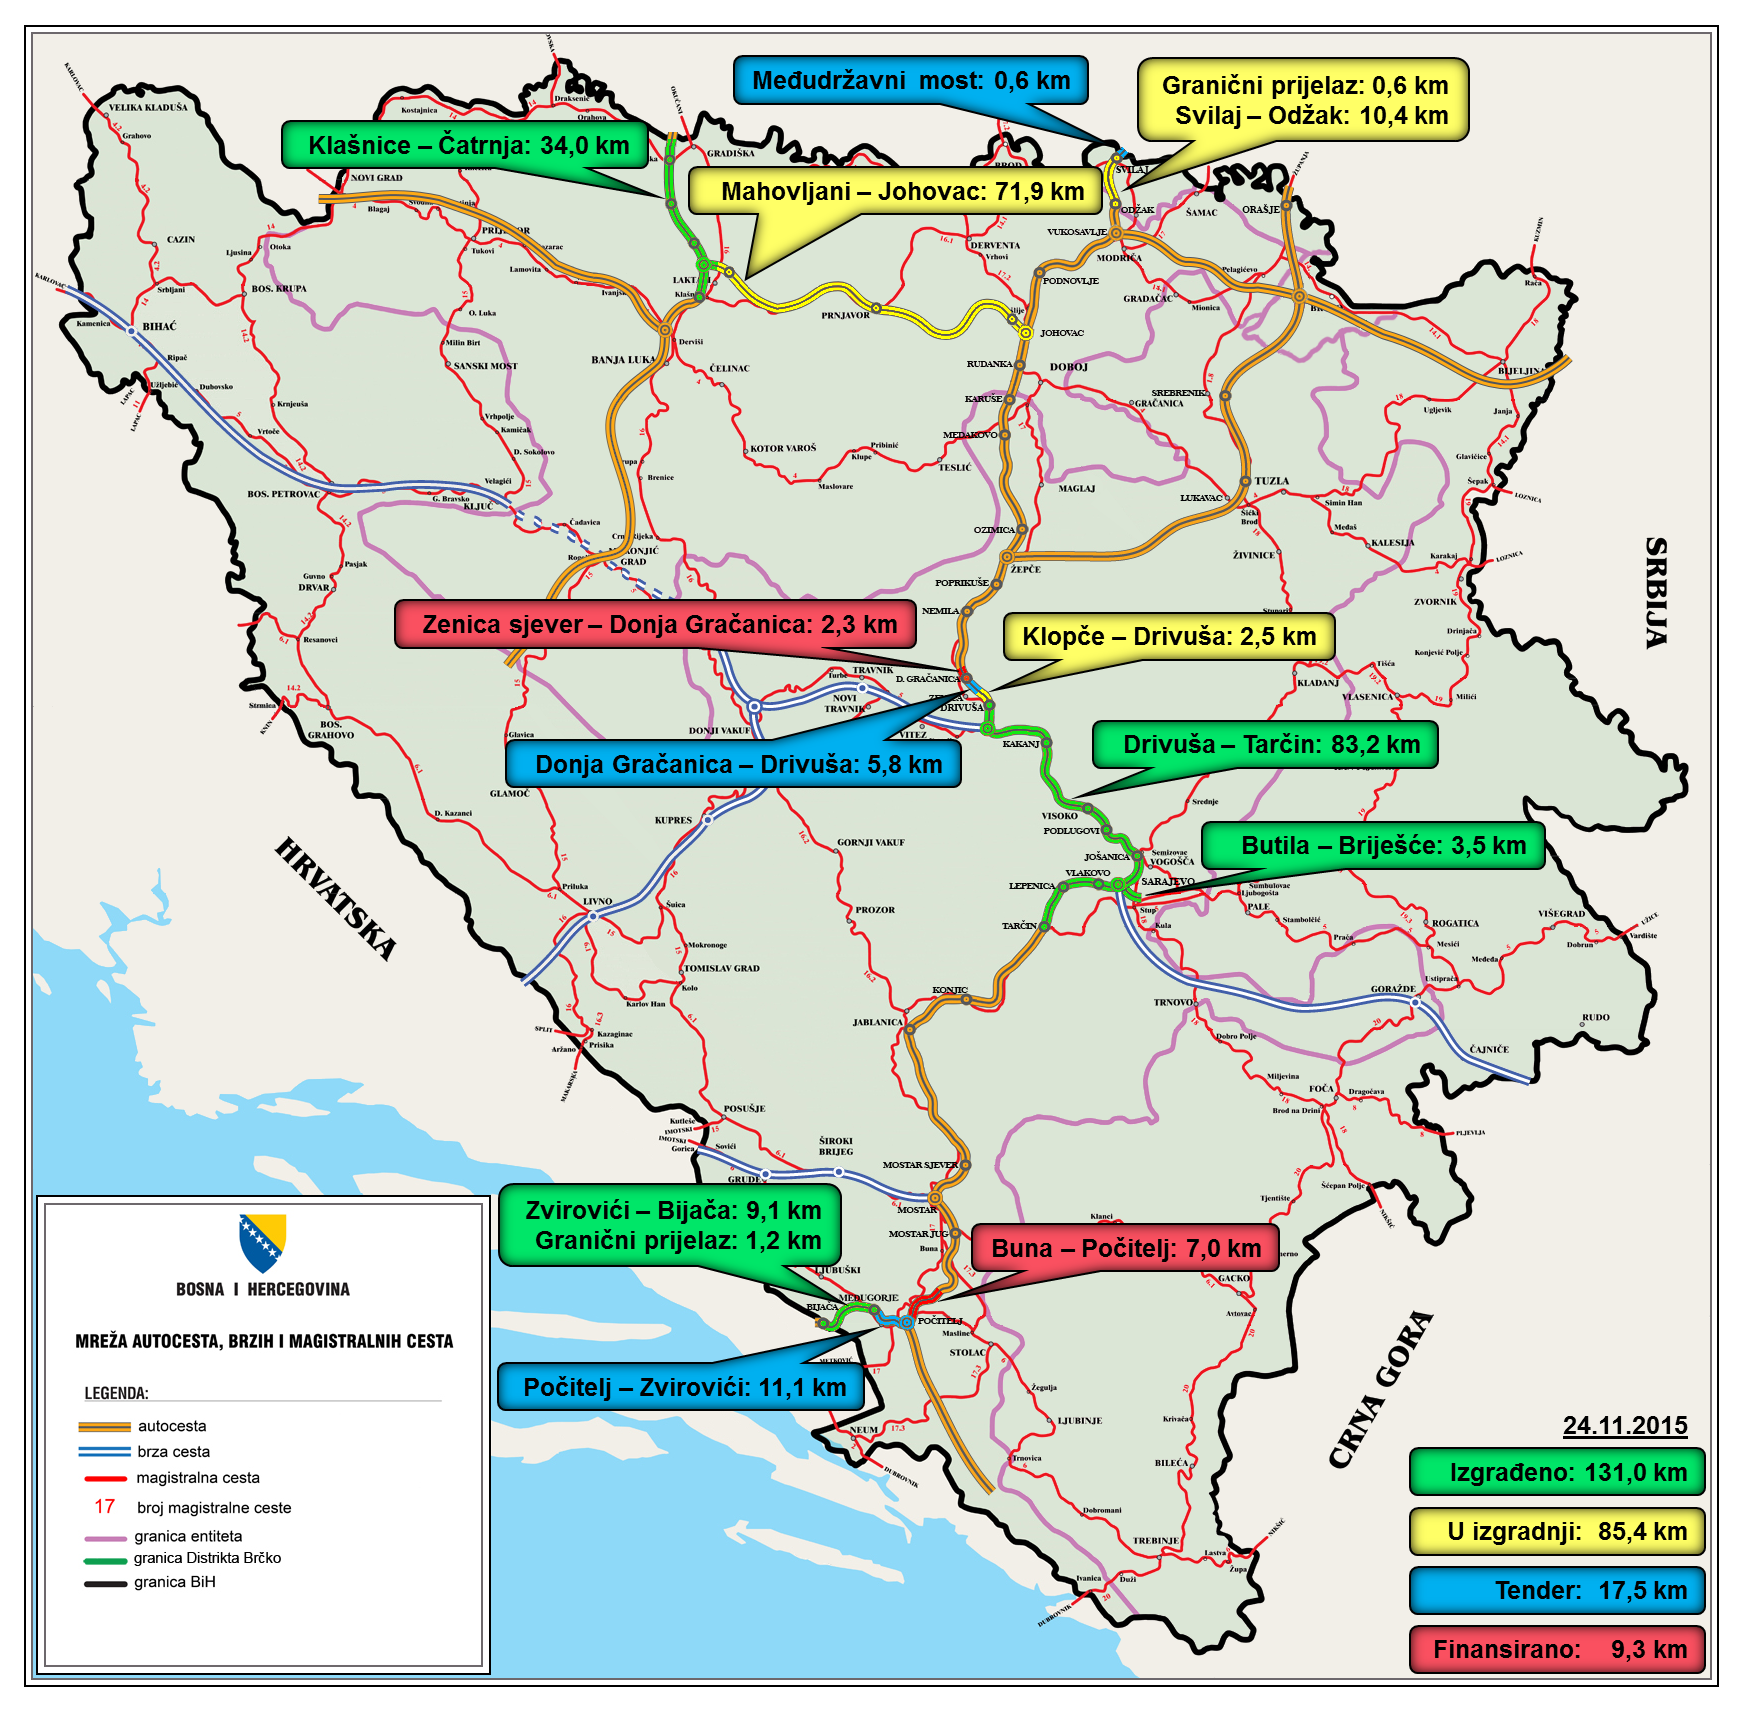 karta bosne i hercegovine ceste File:Autoputevi BiH Karta.png   Wikimedia Commons karta bosne i hercegovine ceste